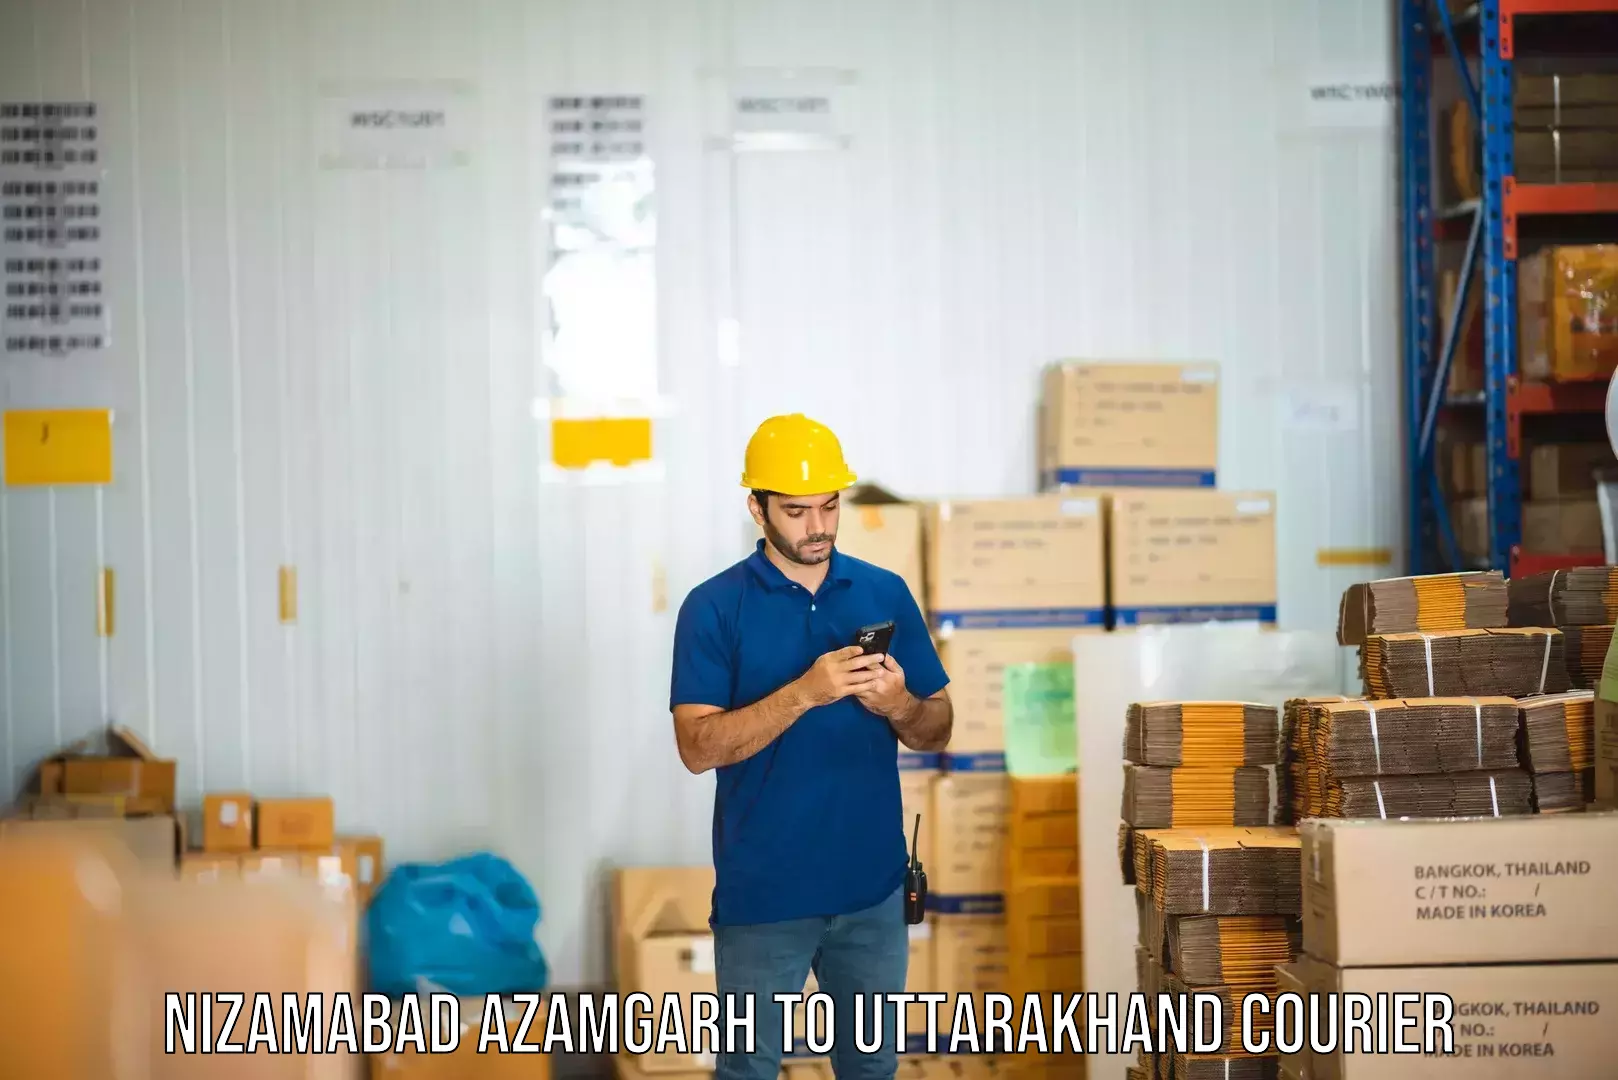 Optimized shipping routes Nizamabad Azamgarh to Uttarakhand